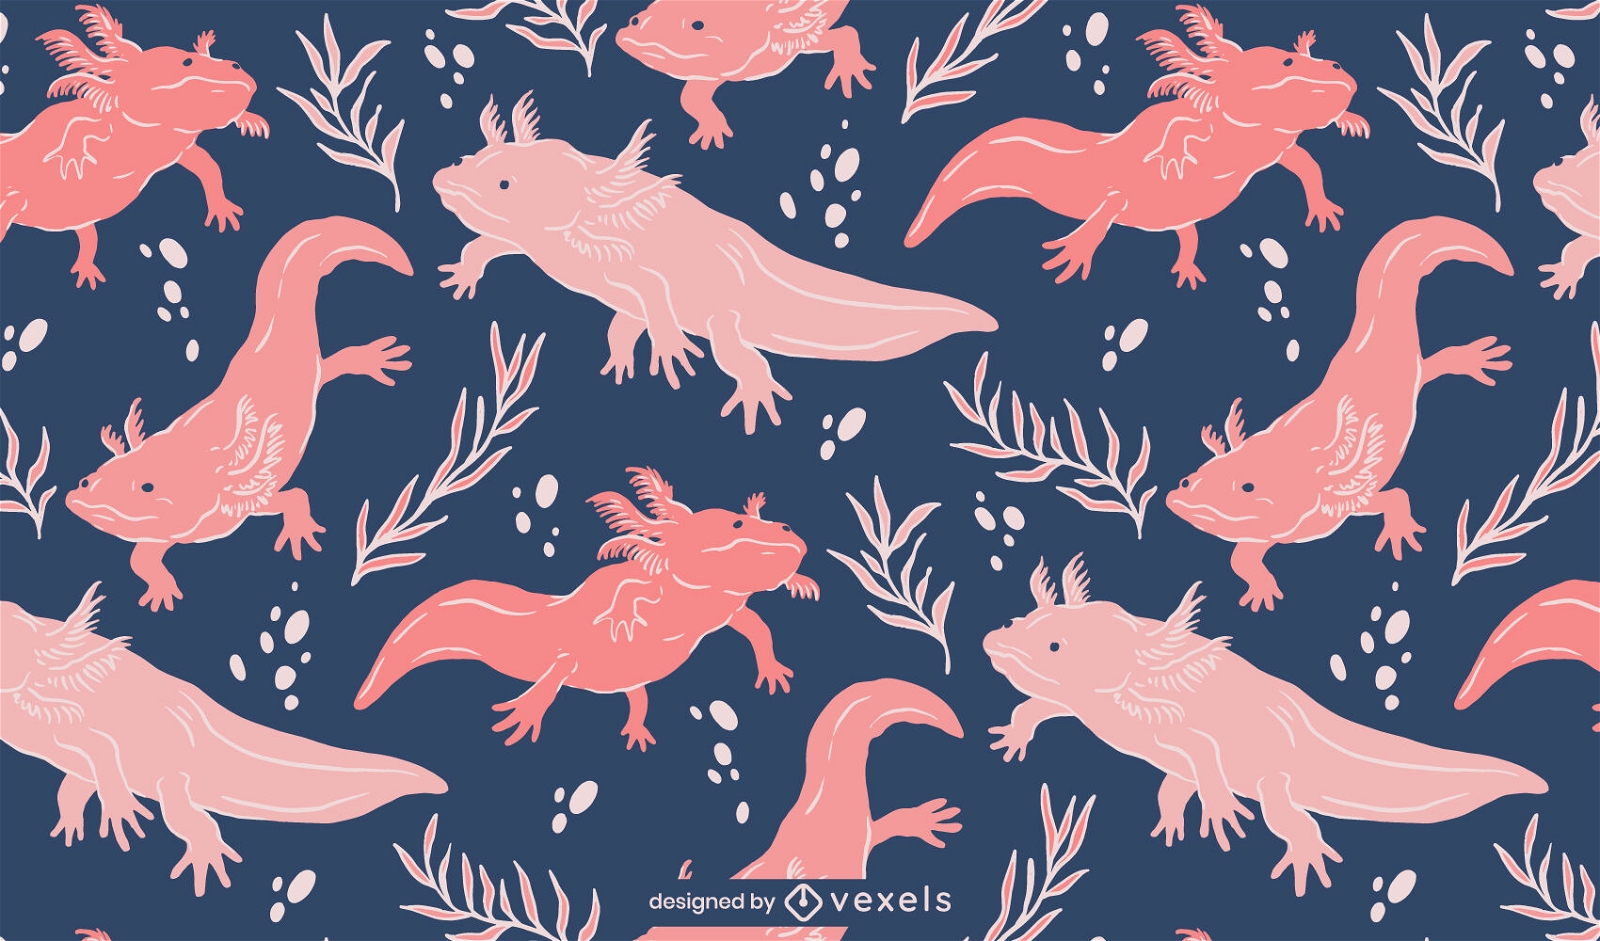 Axolotls, die im Wassermusterdesign schwimmen